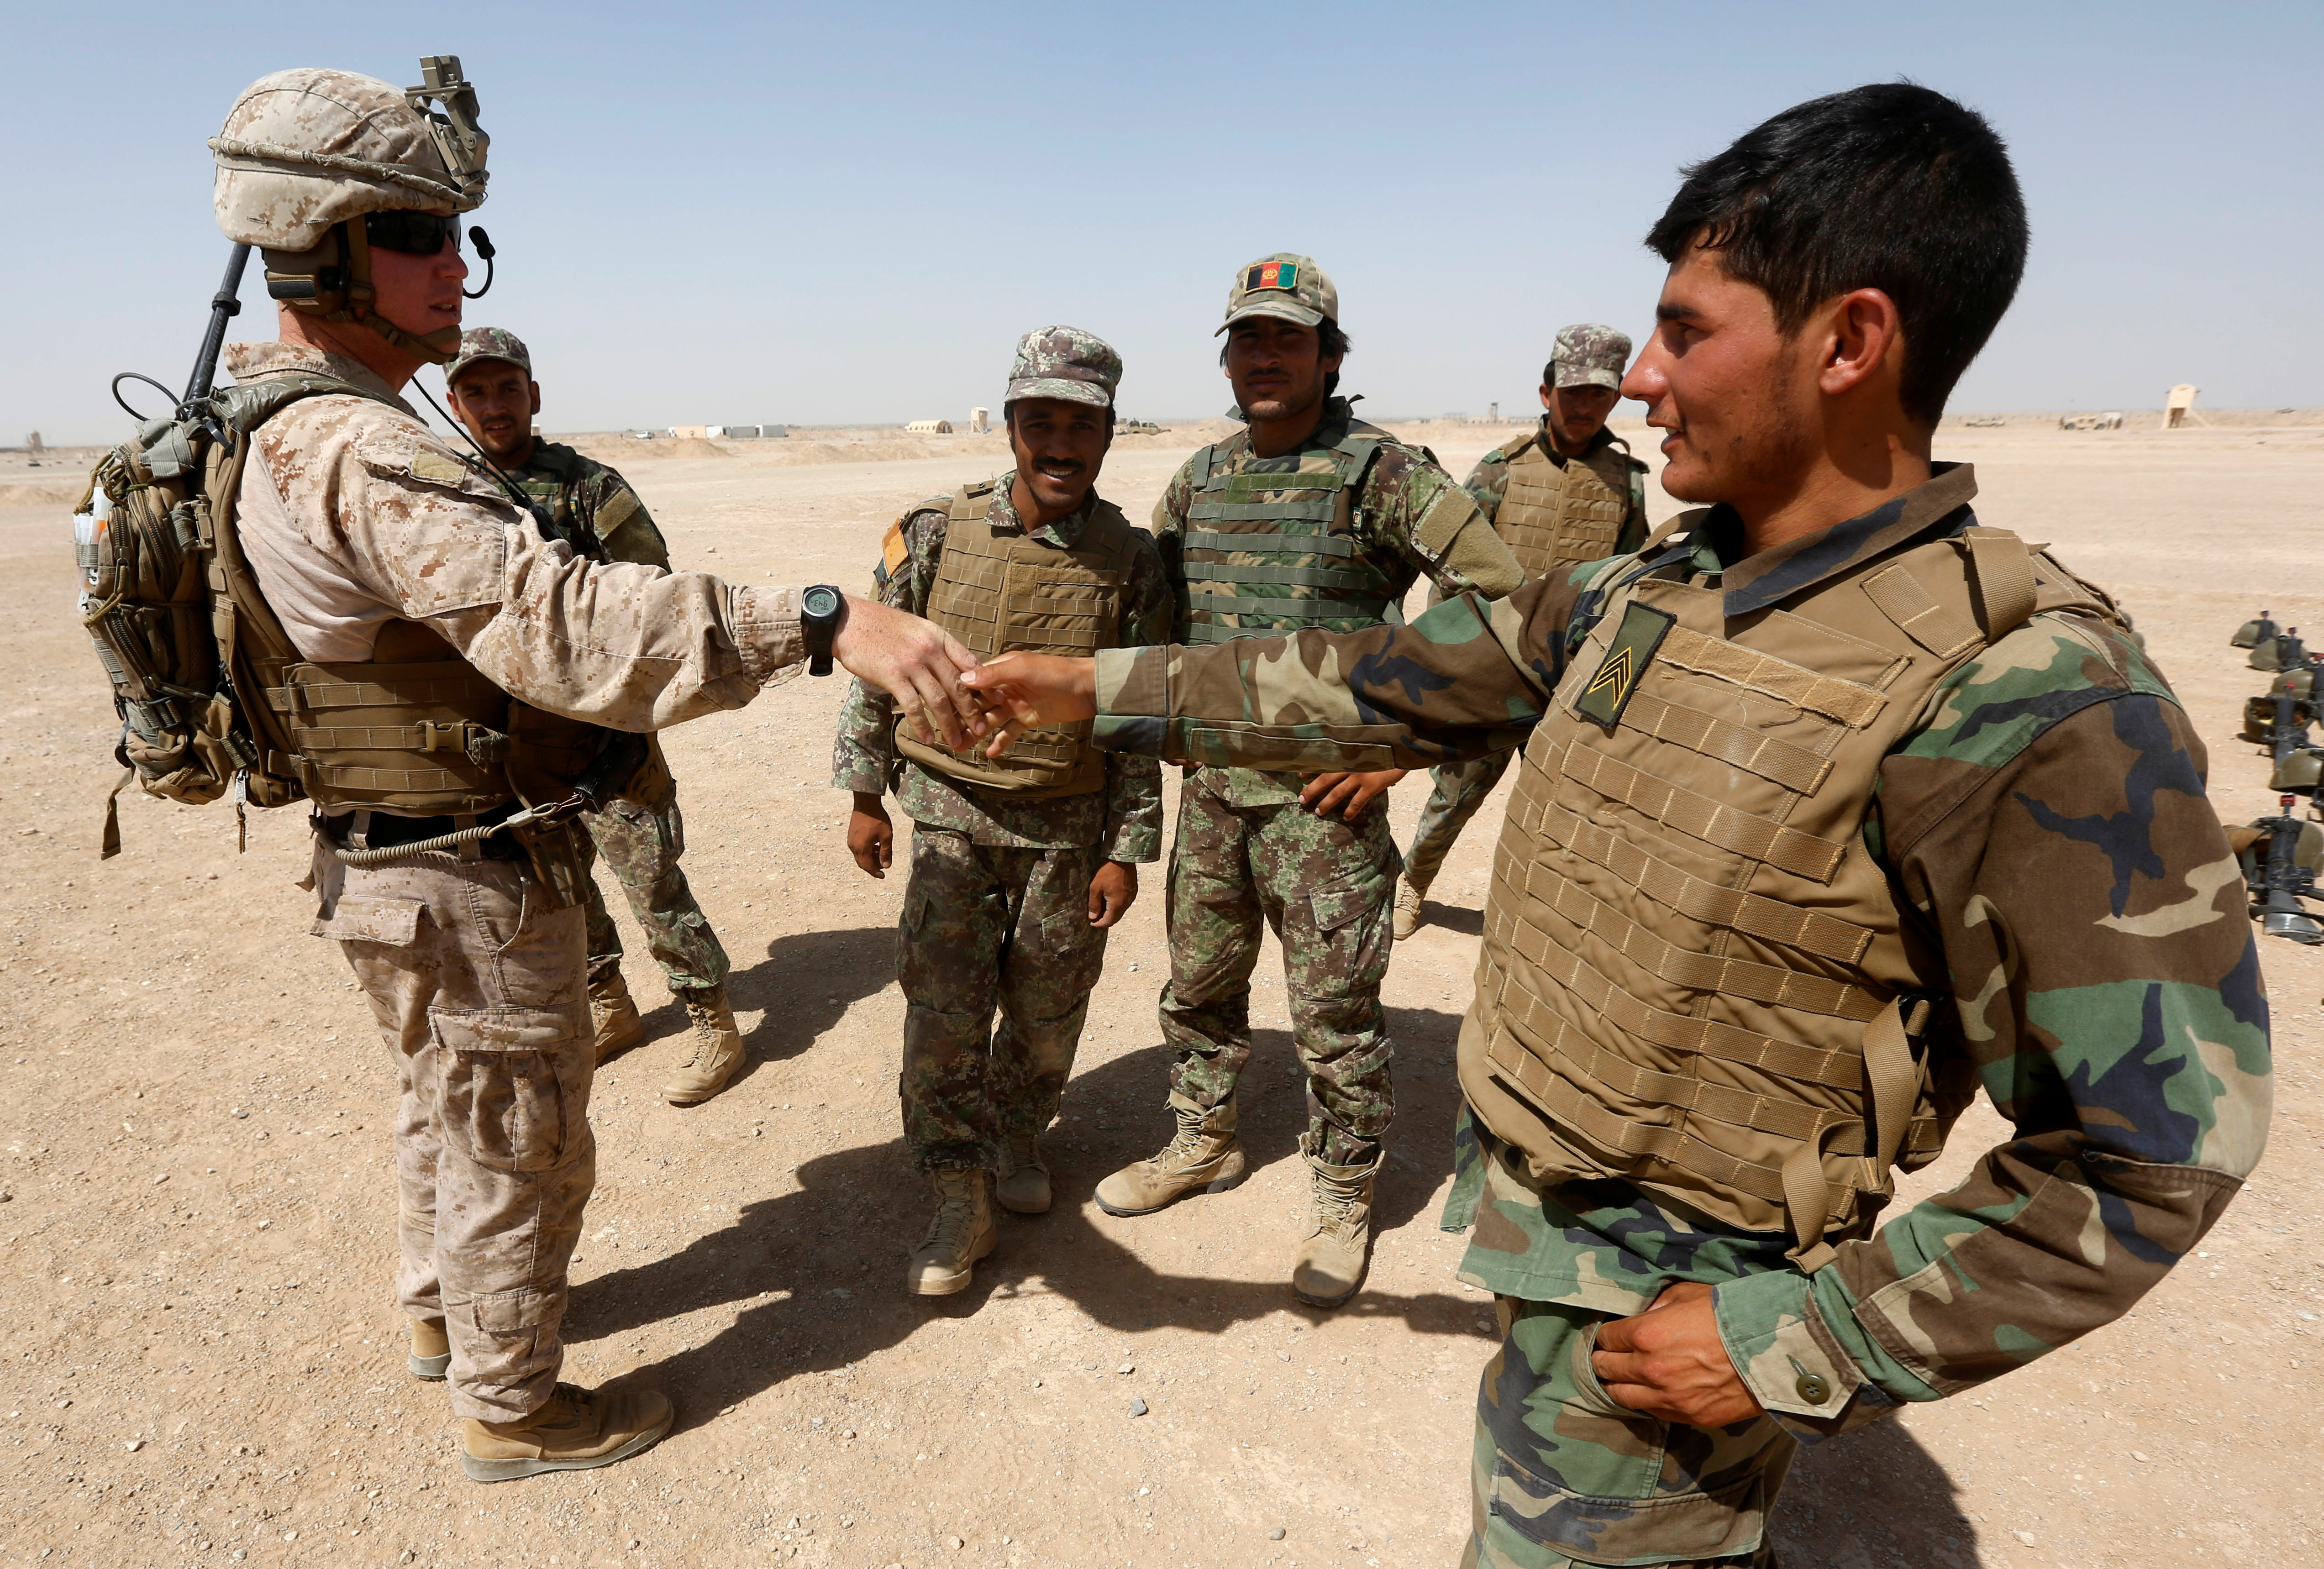 Видео военные американские. Солдат армии США В Афганистане. Американские войска в Афганистане. Армия США В Афганистане 2001. Американцы в Афганистане 2001.